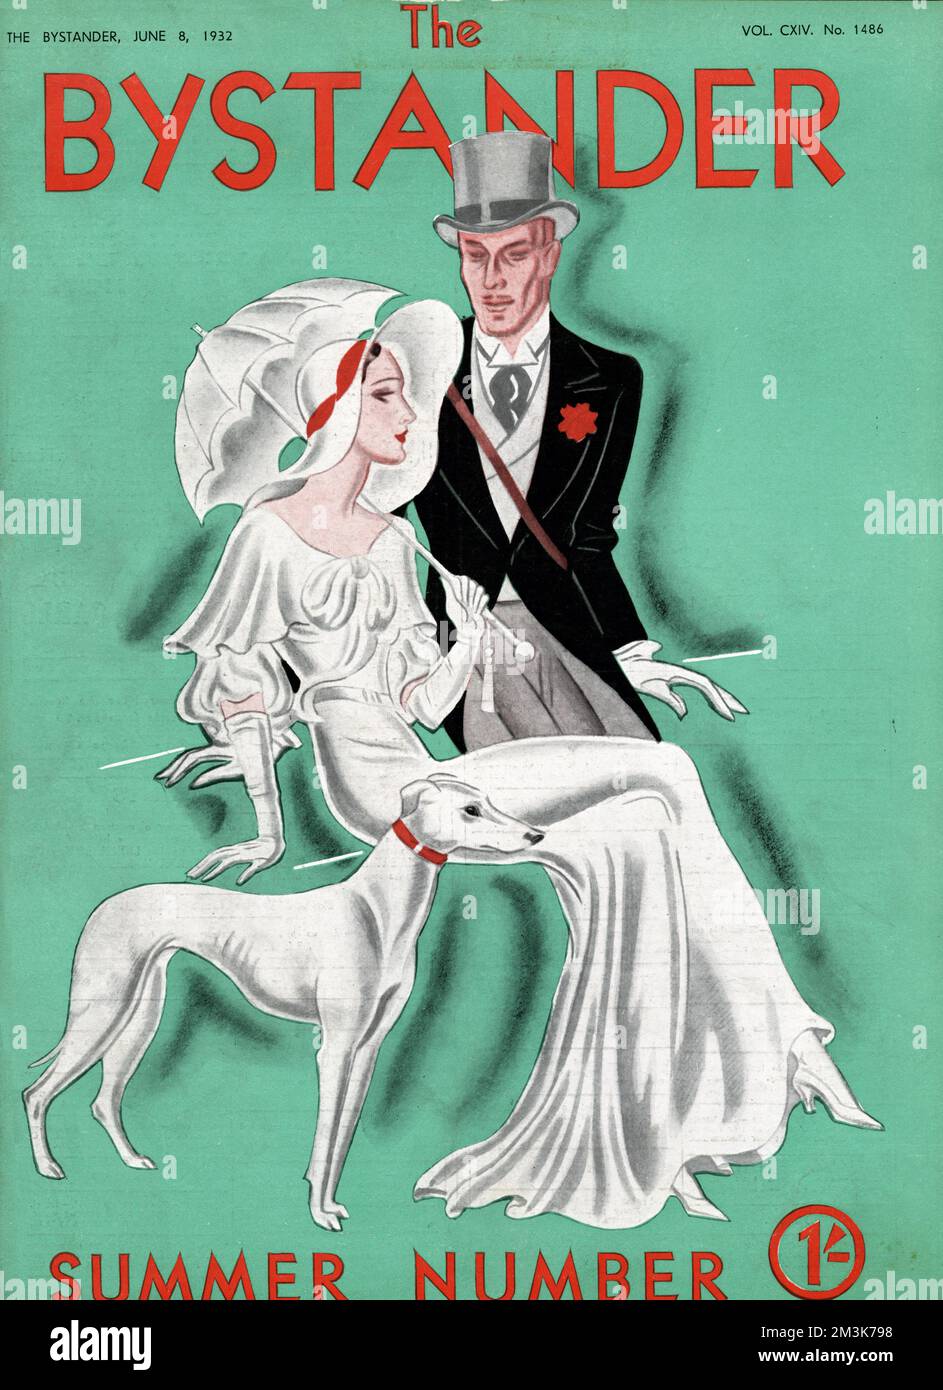 Illustration de la couverture du passant représentant un élégant couple habillé pour un événement saisonnier comme Ascot, accompagné d'un greyhound. Date: 1932 Banque D'Images